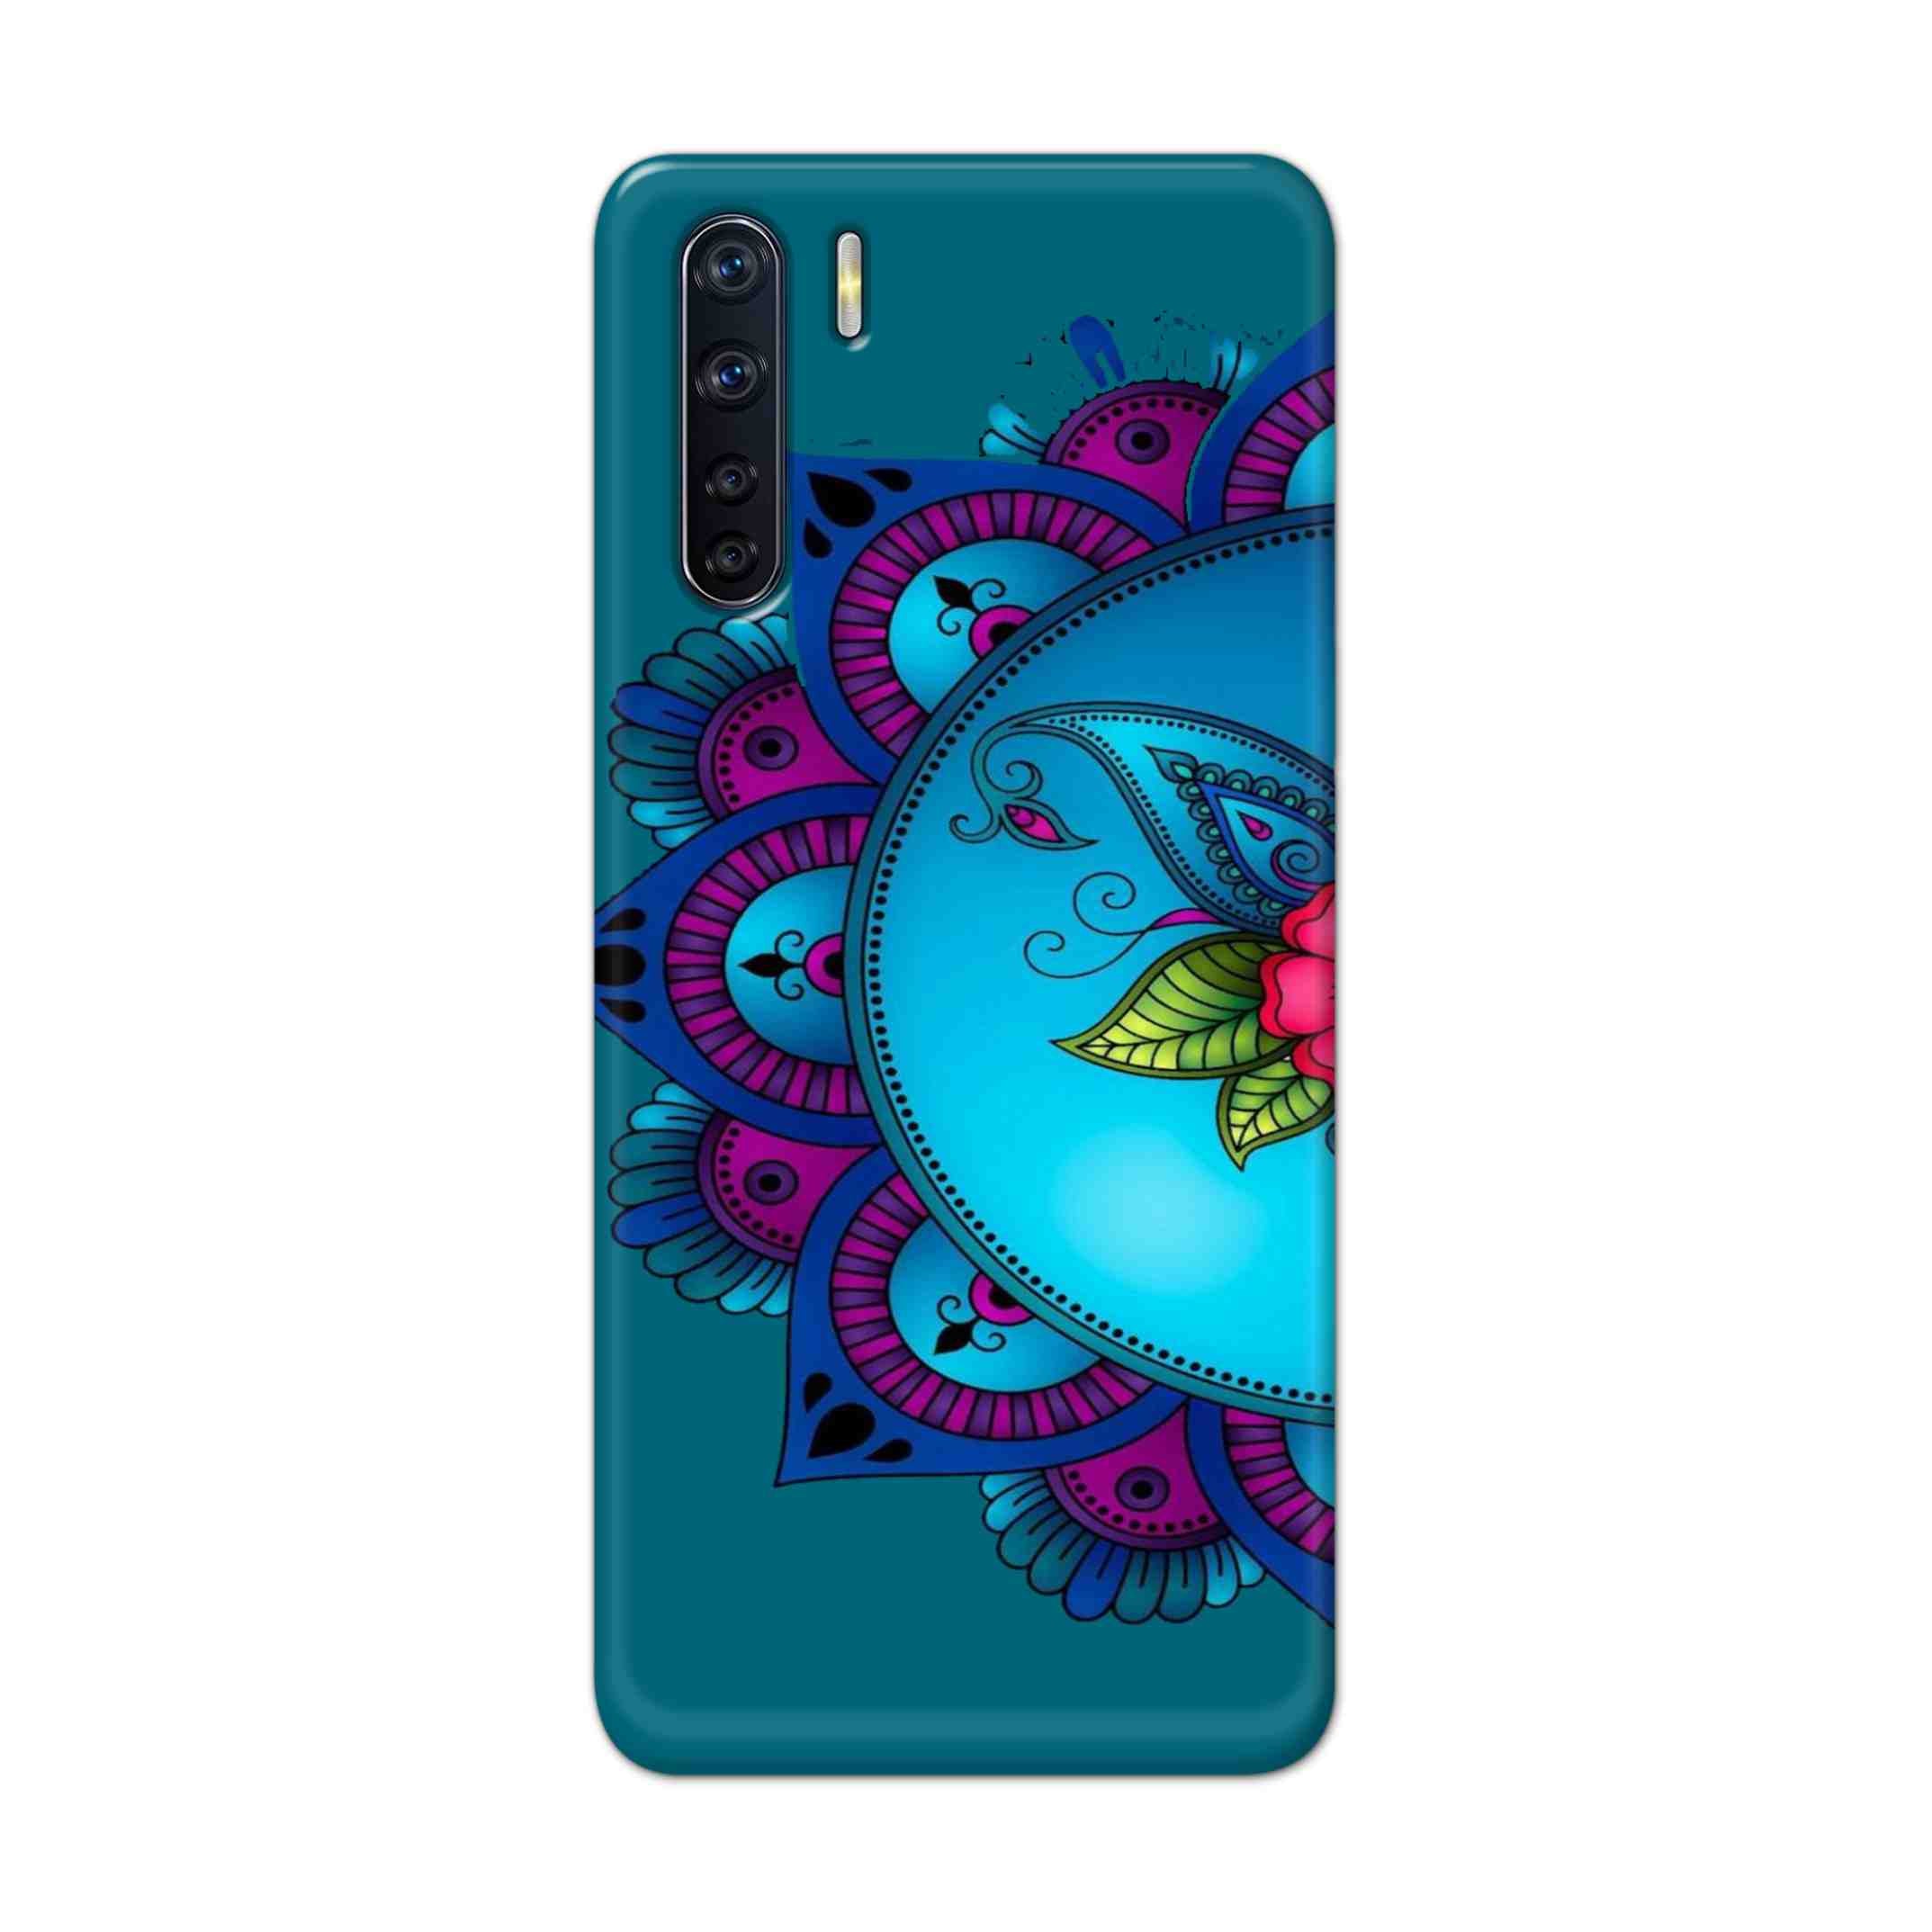 Buy Star Mandala Hard Back Mobile Phone Case Cover For OPPO F15 Online